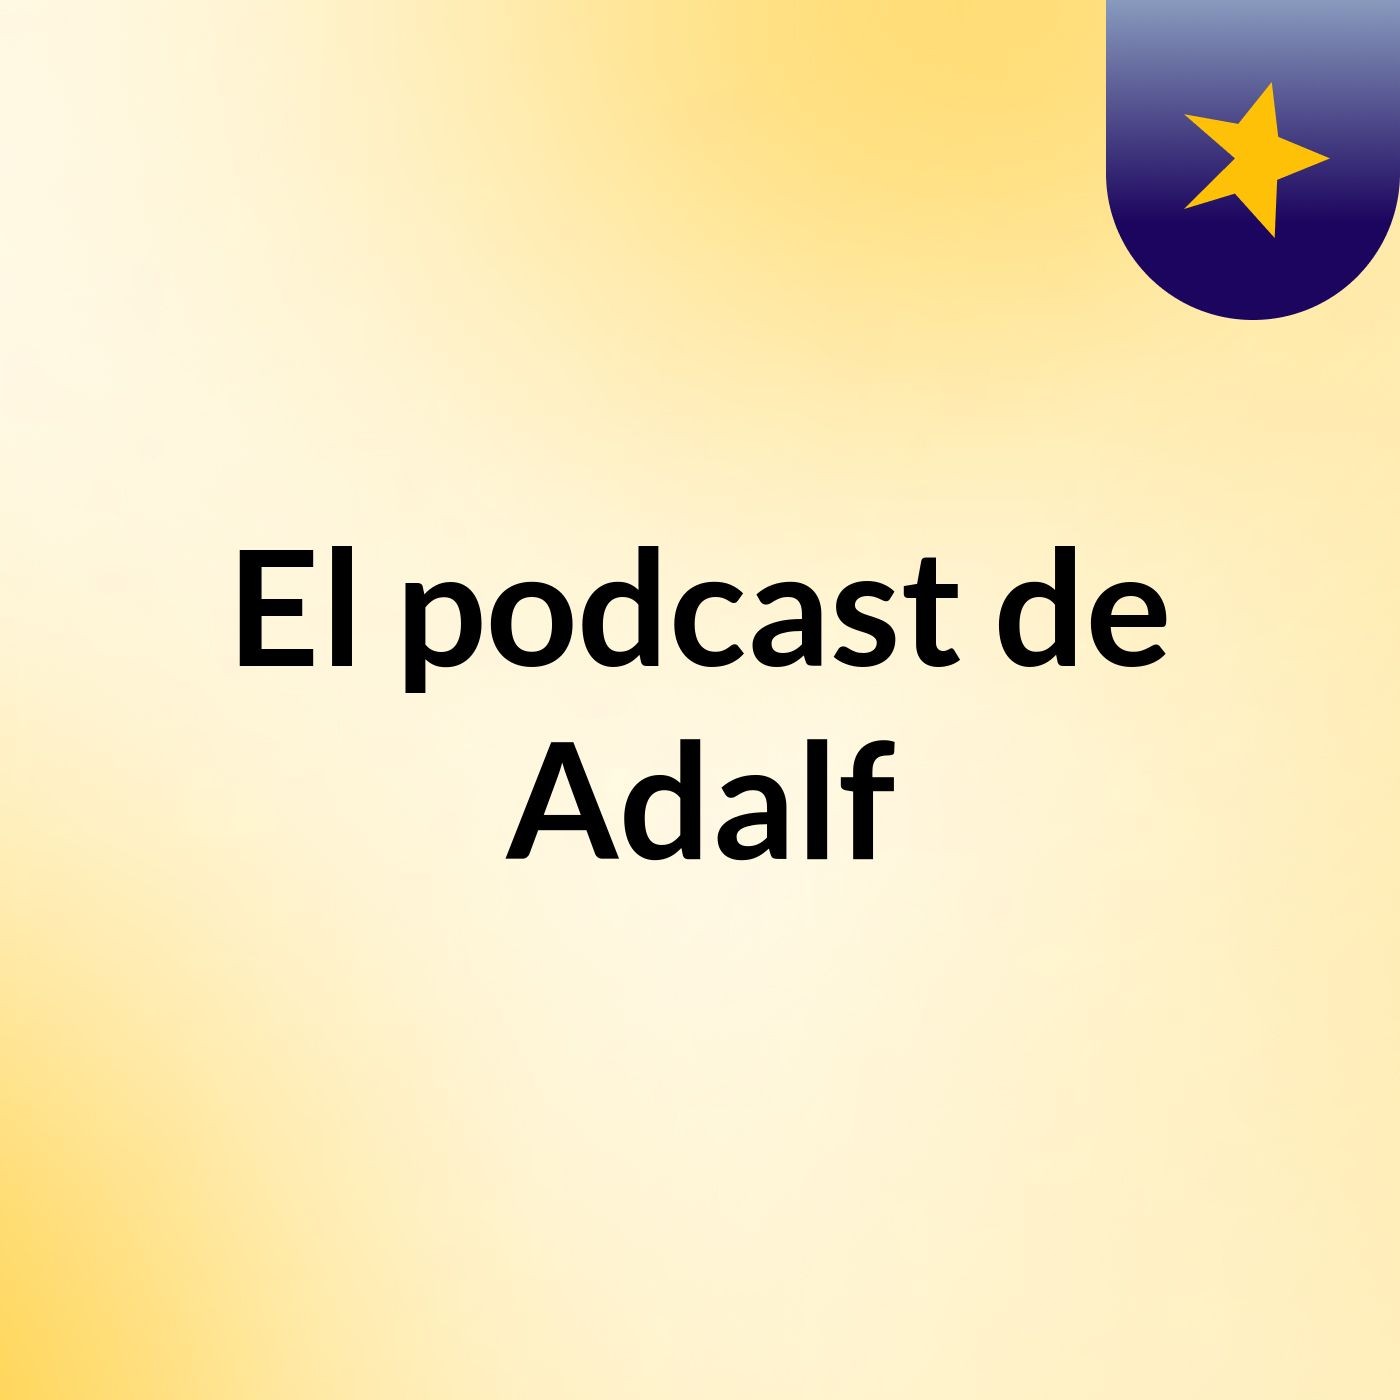 Episodio 5 - El podcast de Adalf